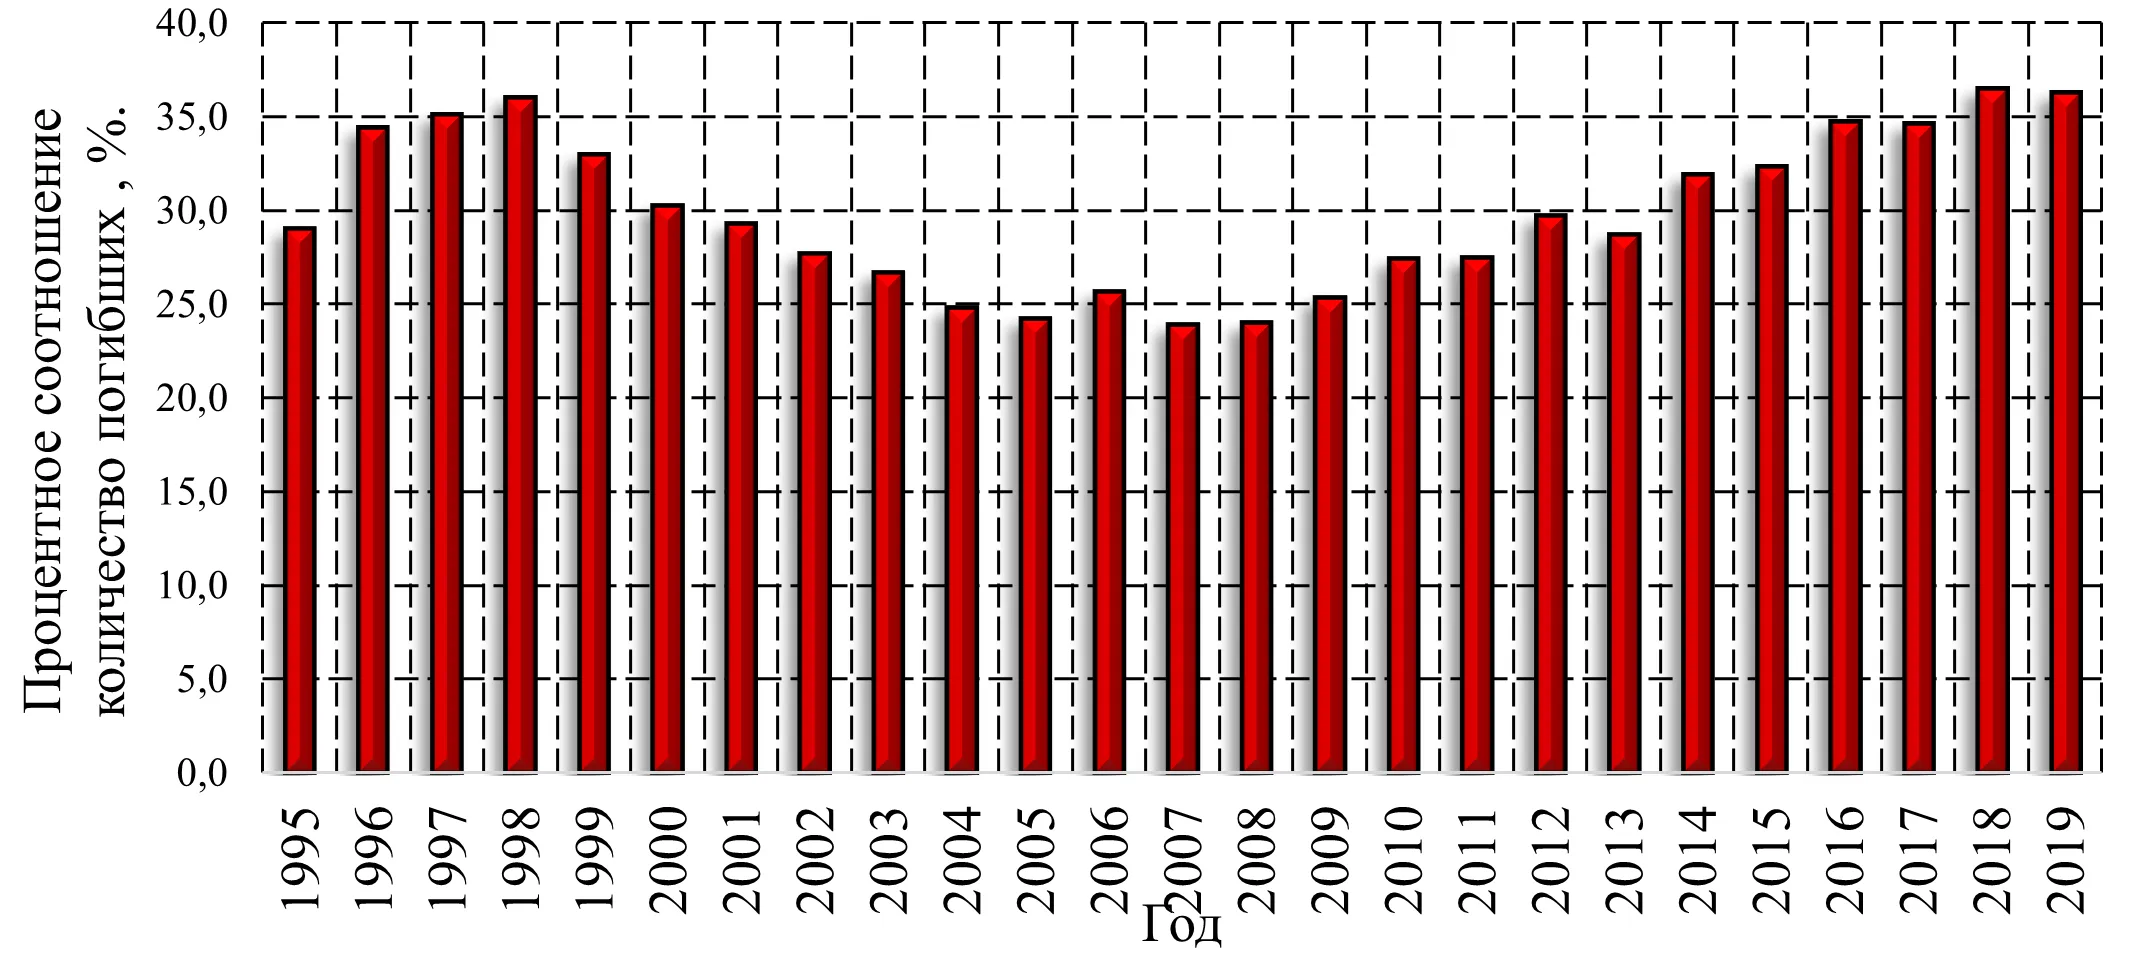 Гистограмма распределения процентного соотношения количества погибших по причине нарушения правил пожарной безопасности к общему количеству погибших при пожарах в Российской Федерации с 1995 по 2019 года